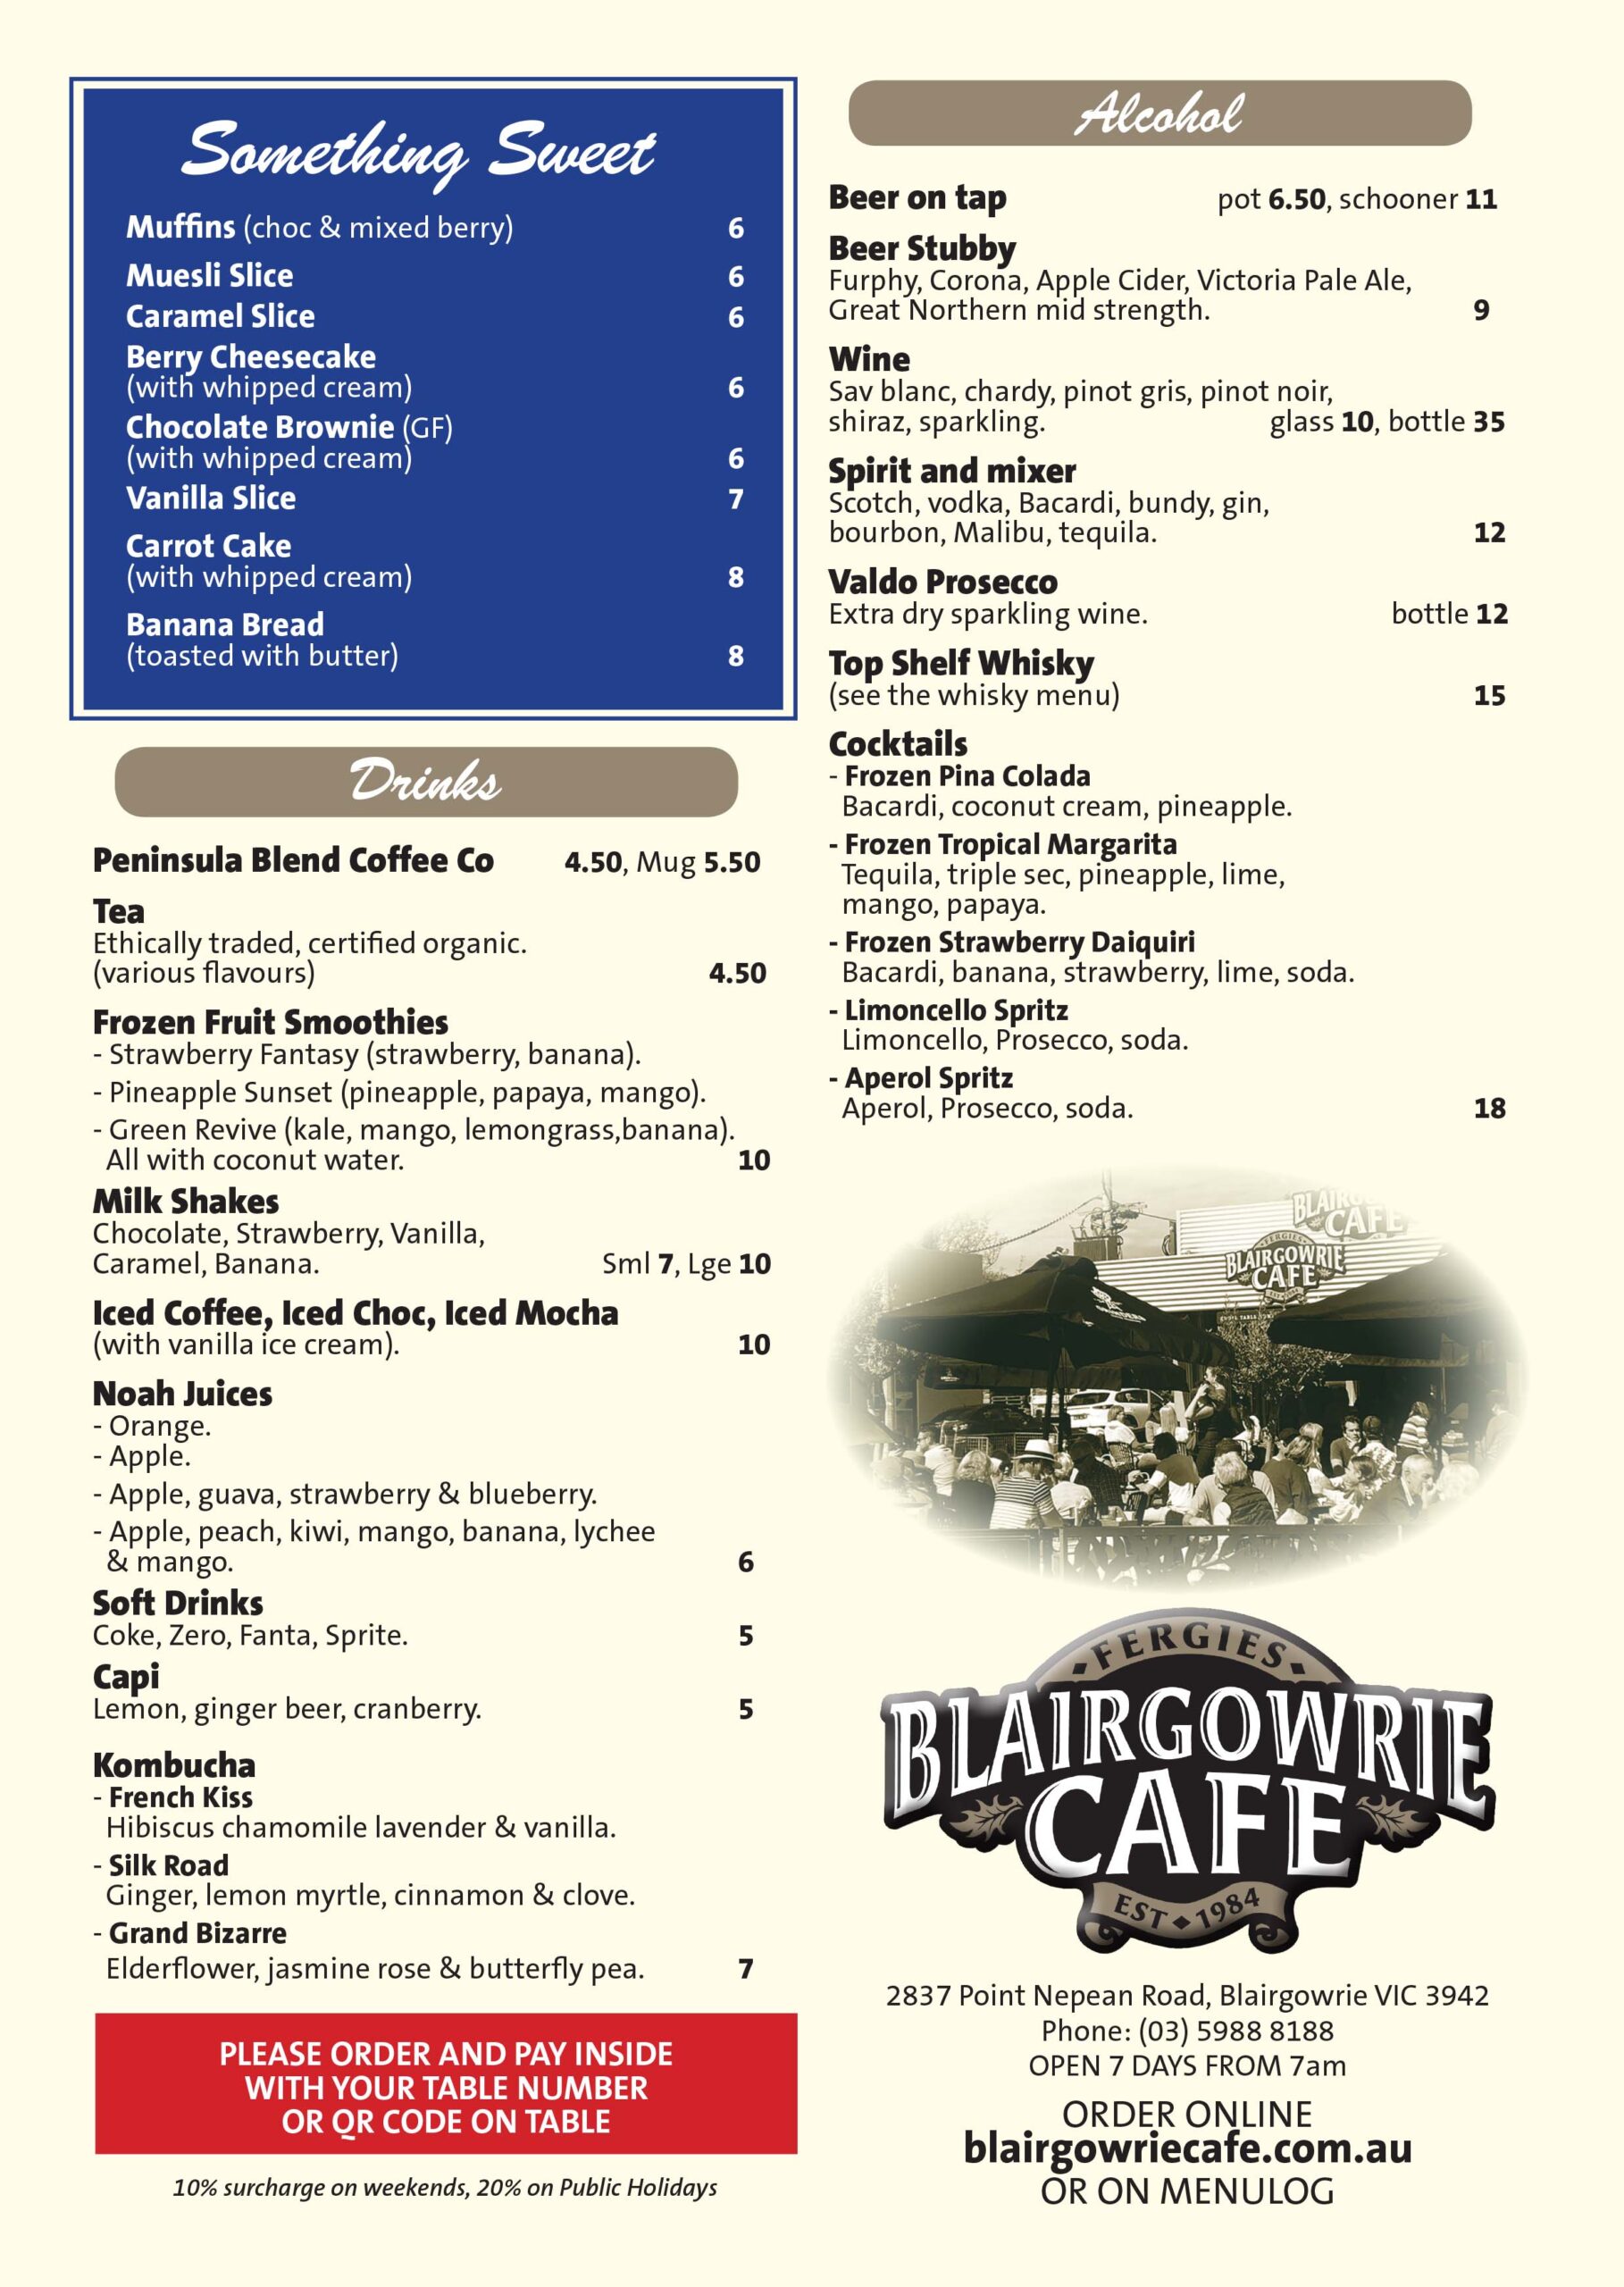 Blairgowrie Cafe menu